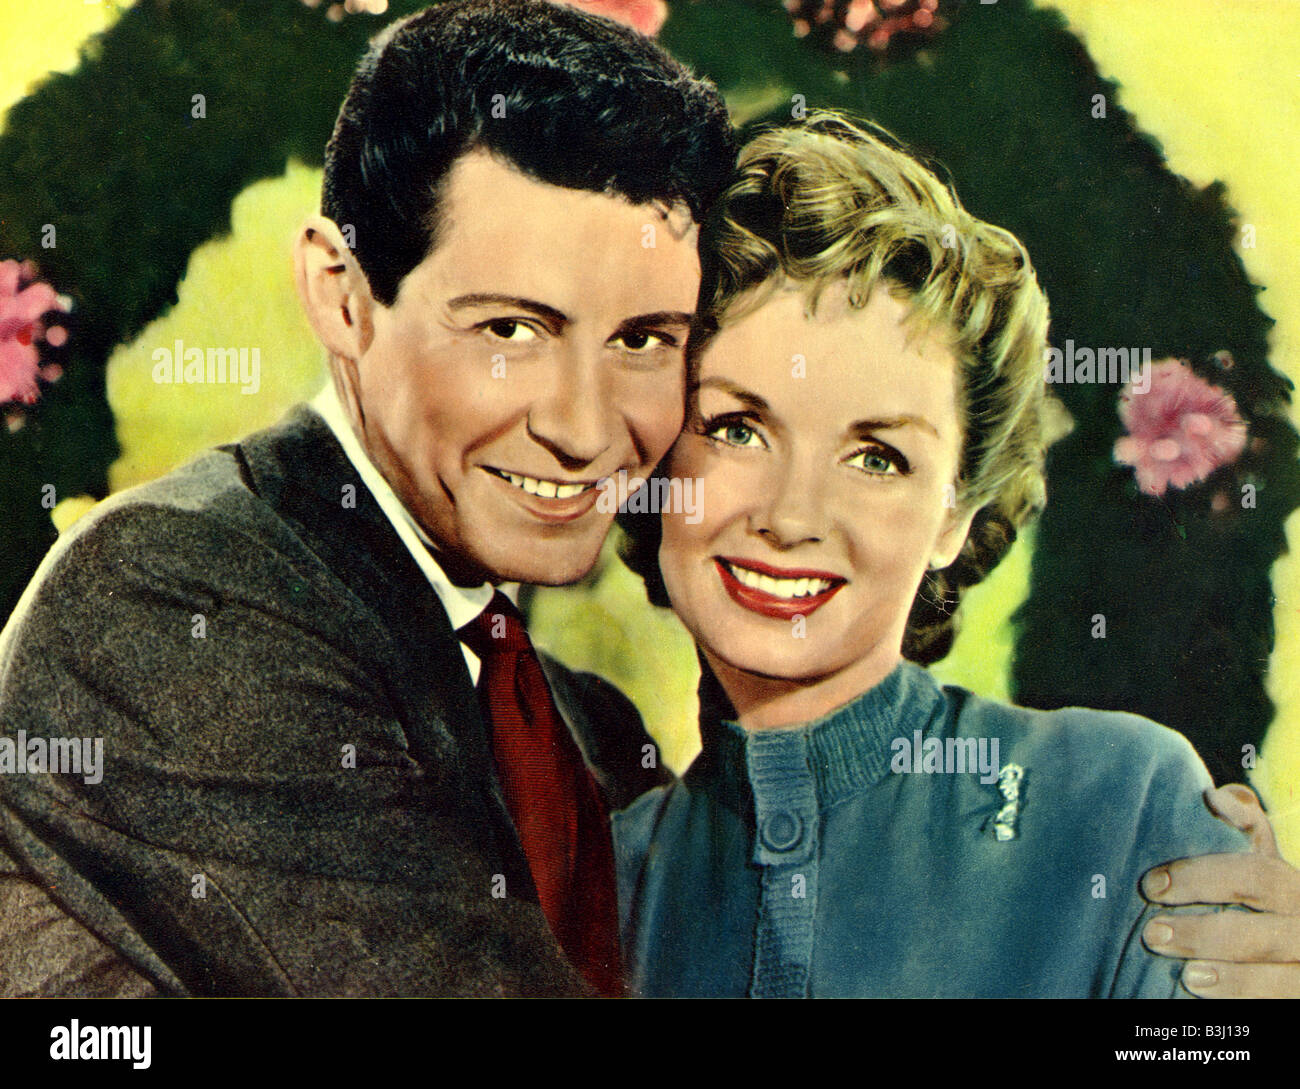 Paquet de joie 1956 RKO film comédie musicale avec Debbie Reynolds et Eddie Fisher Banque D'Images